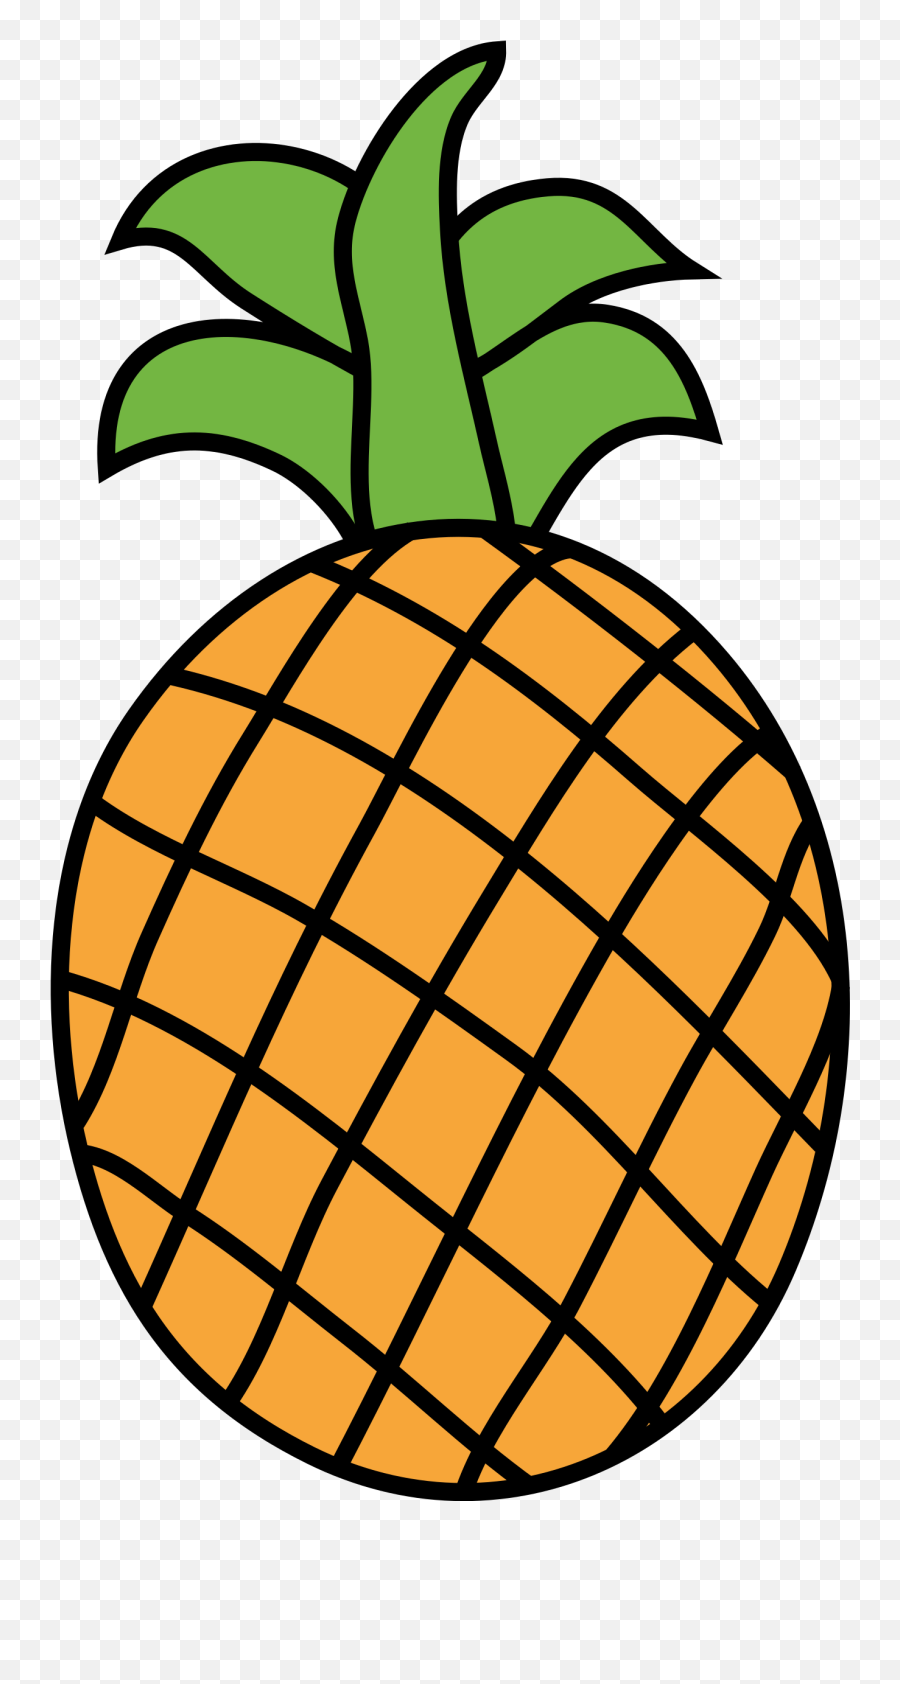 Leaf Clipart Pineapple Leaf Pineapple Transparent Free For - Clipart Image Of Pineapple Emoji,Leaf Pig Emoji